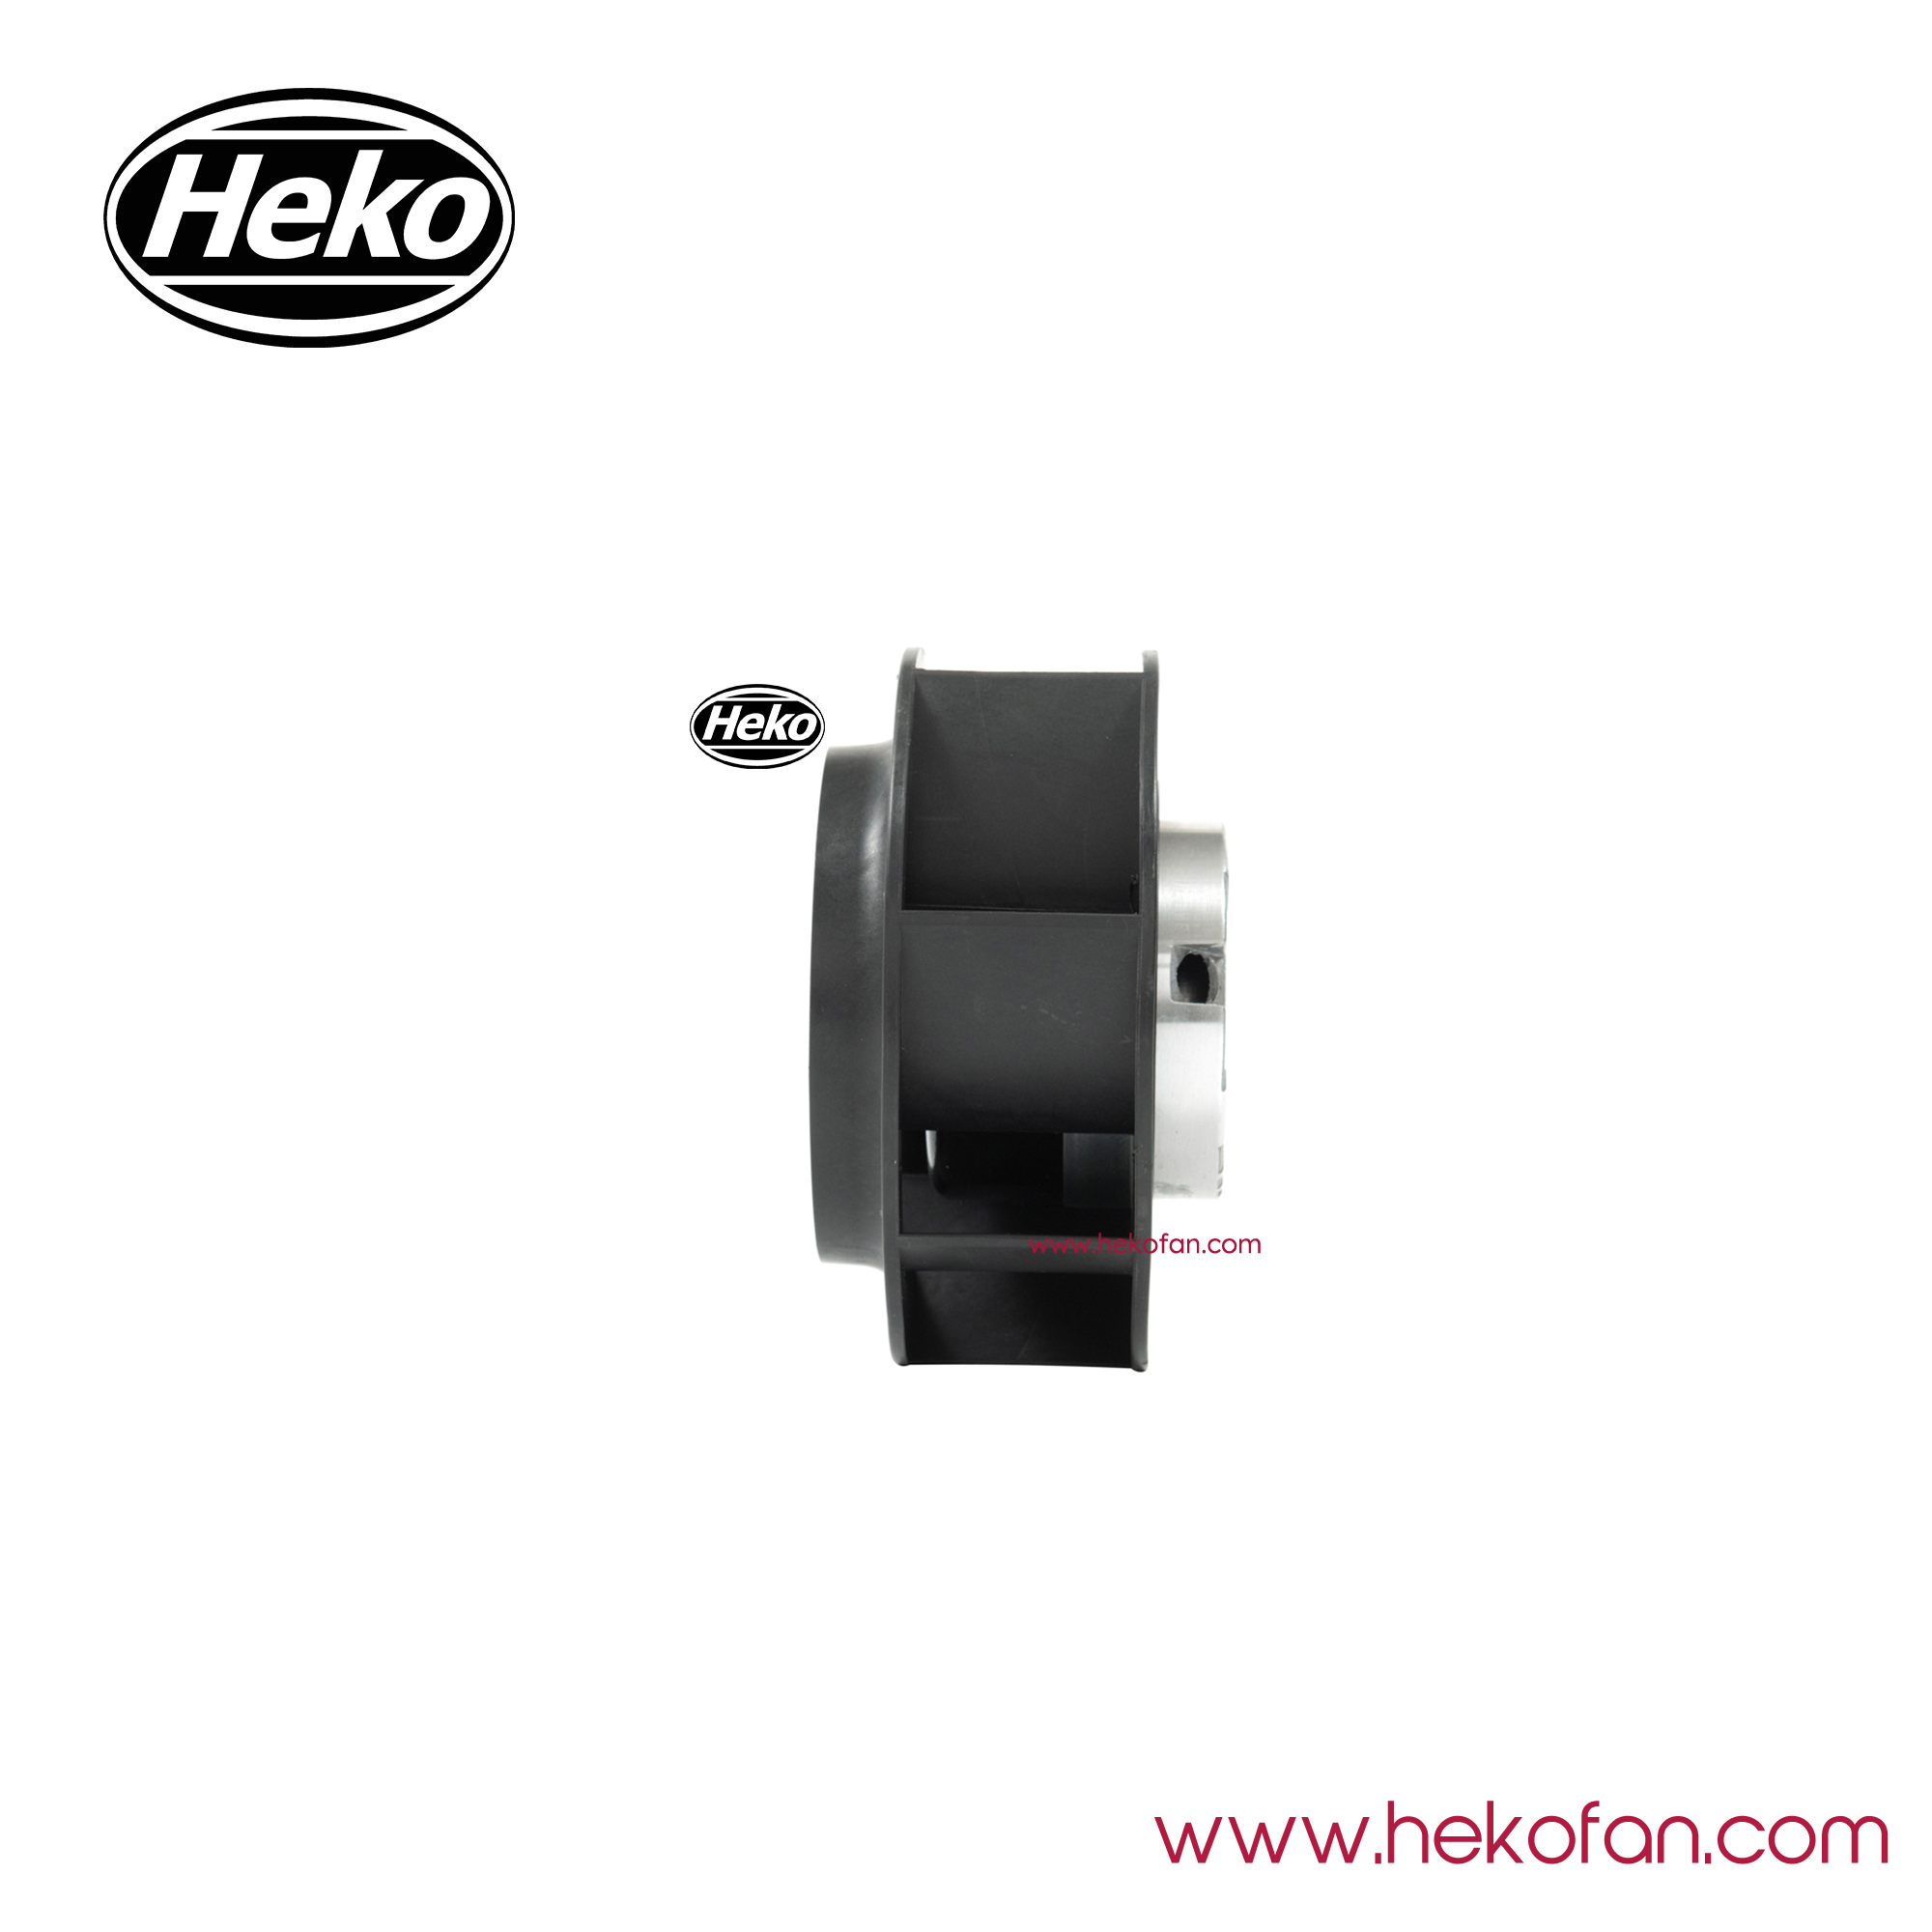 HEKO DC133mm DC centrifugeuse arrière pour cabine de pulvérisation